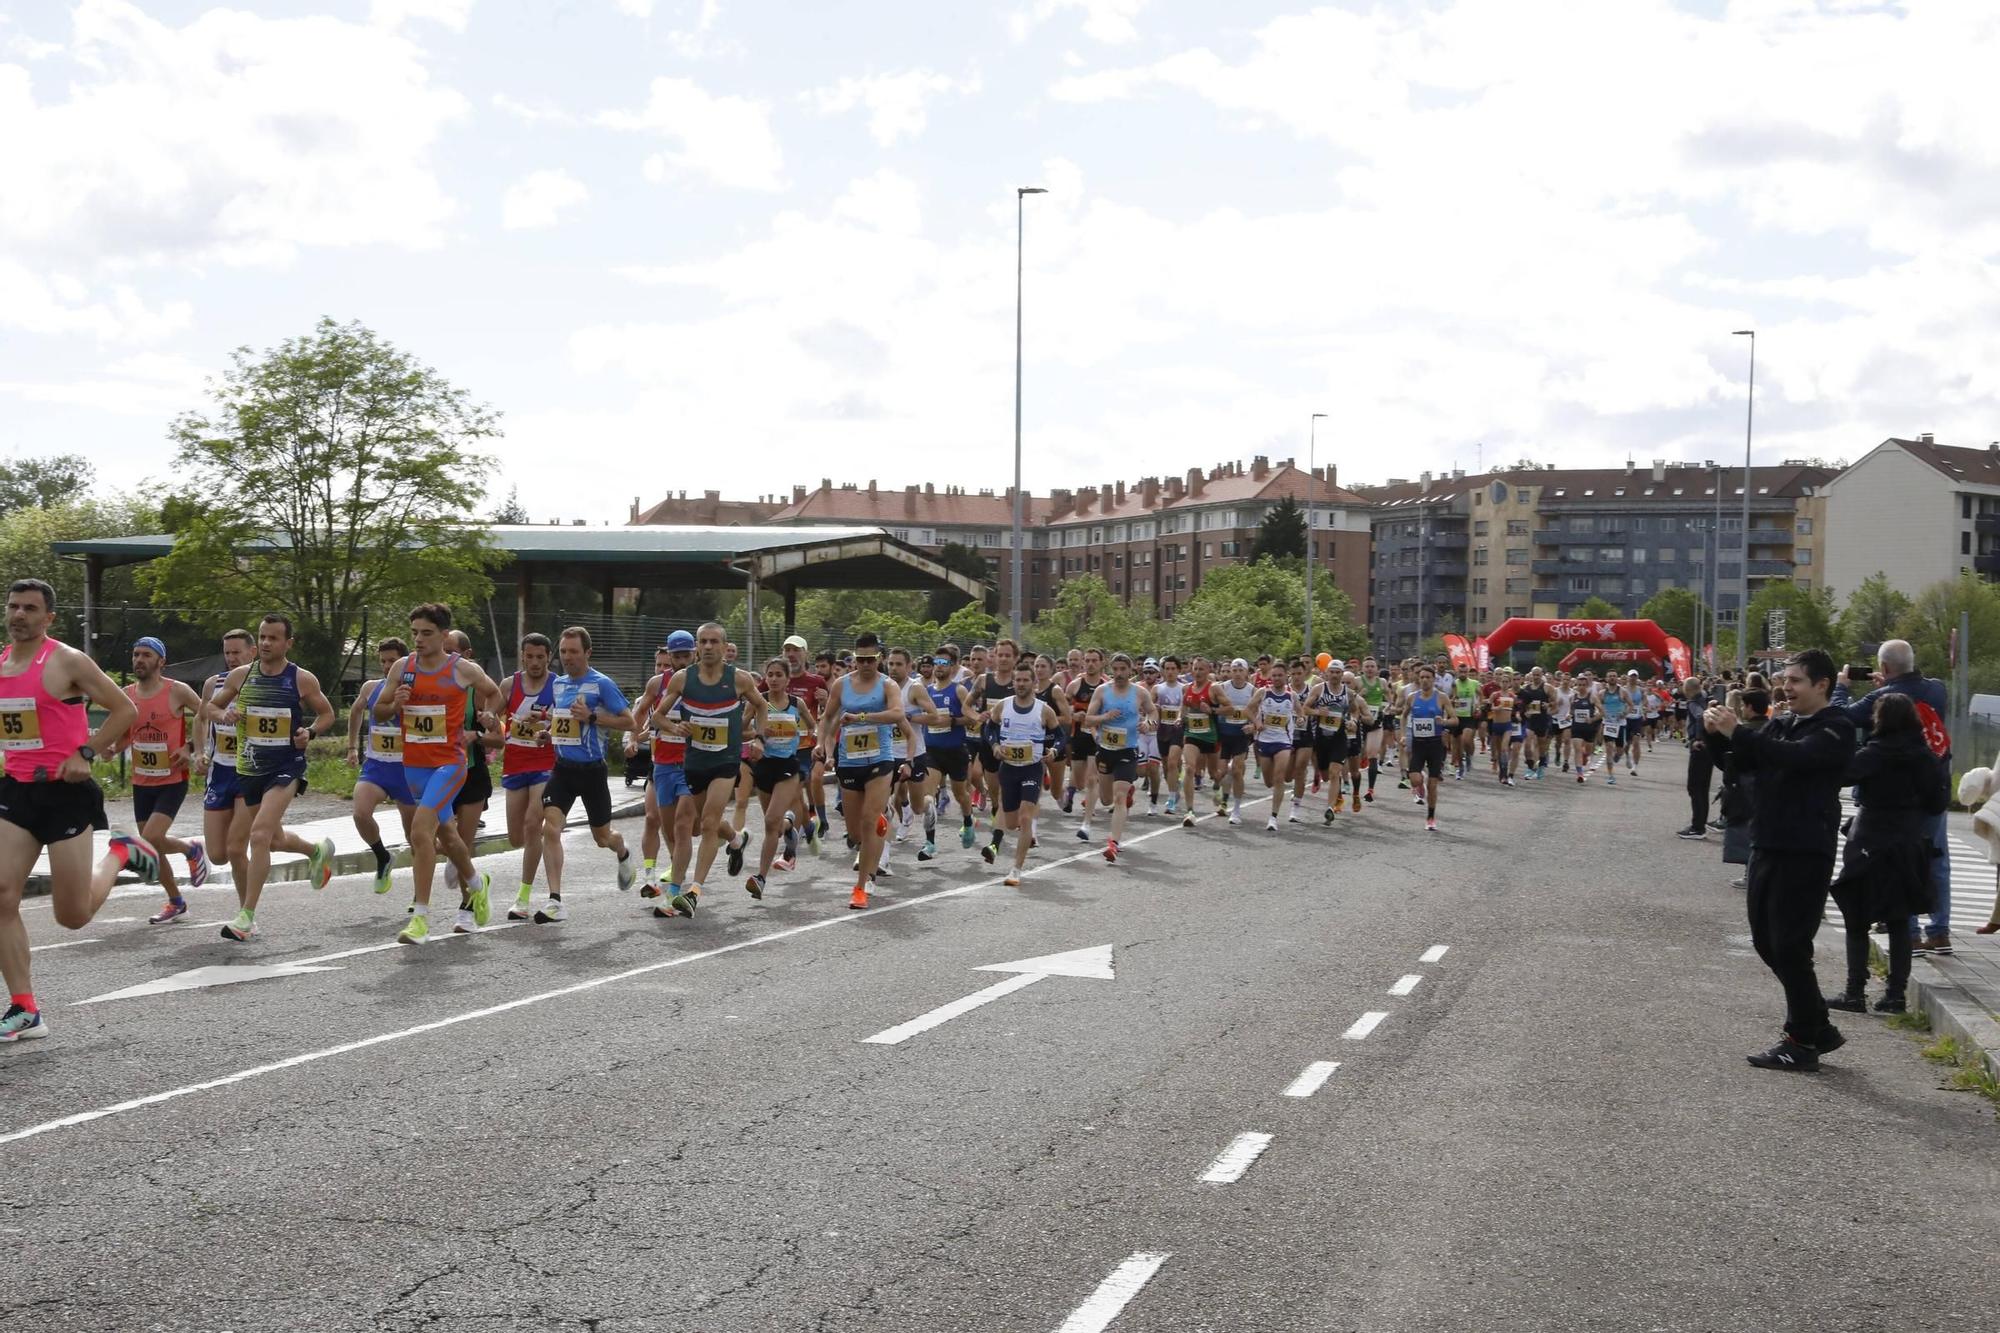 La media maratón de Gijón, en imágenes